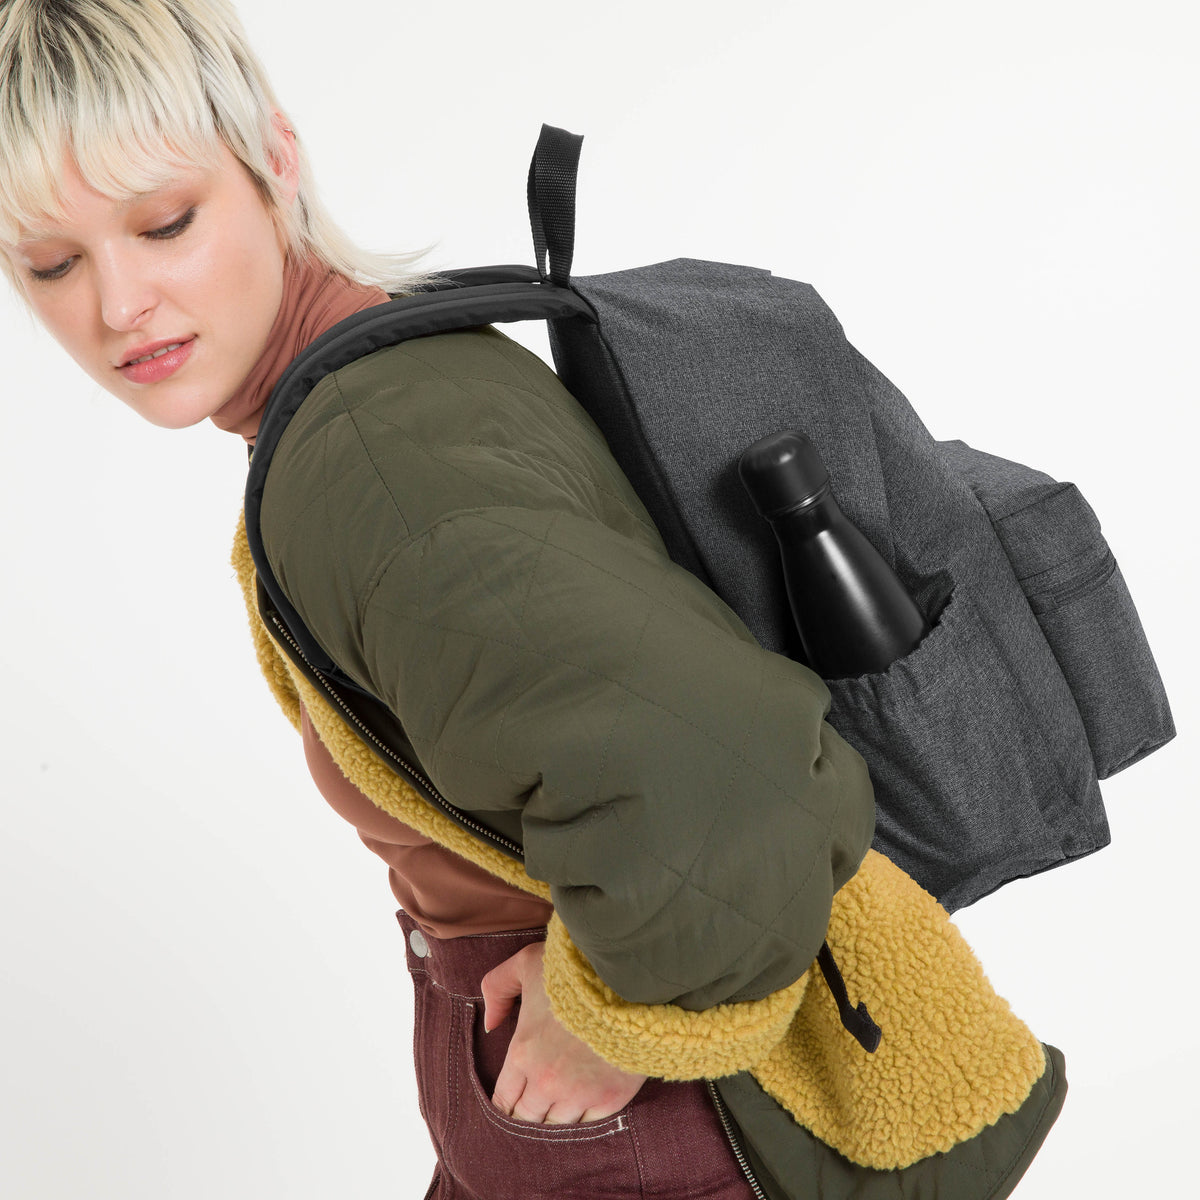 Eastpak Padded Zippl'r + Backpack - Black Denim